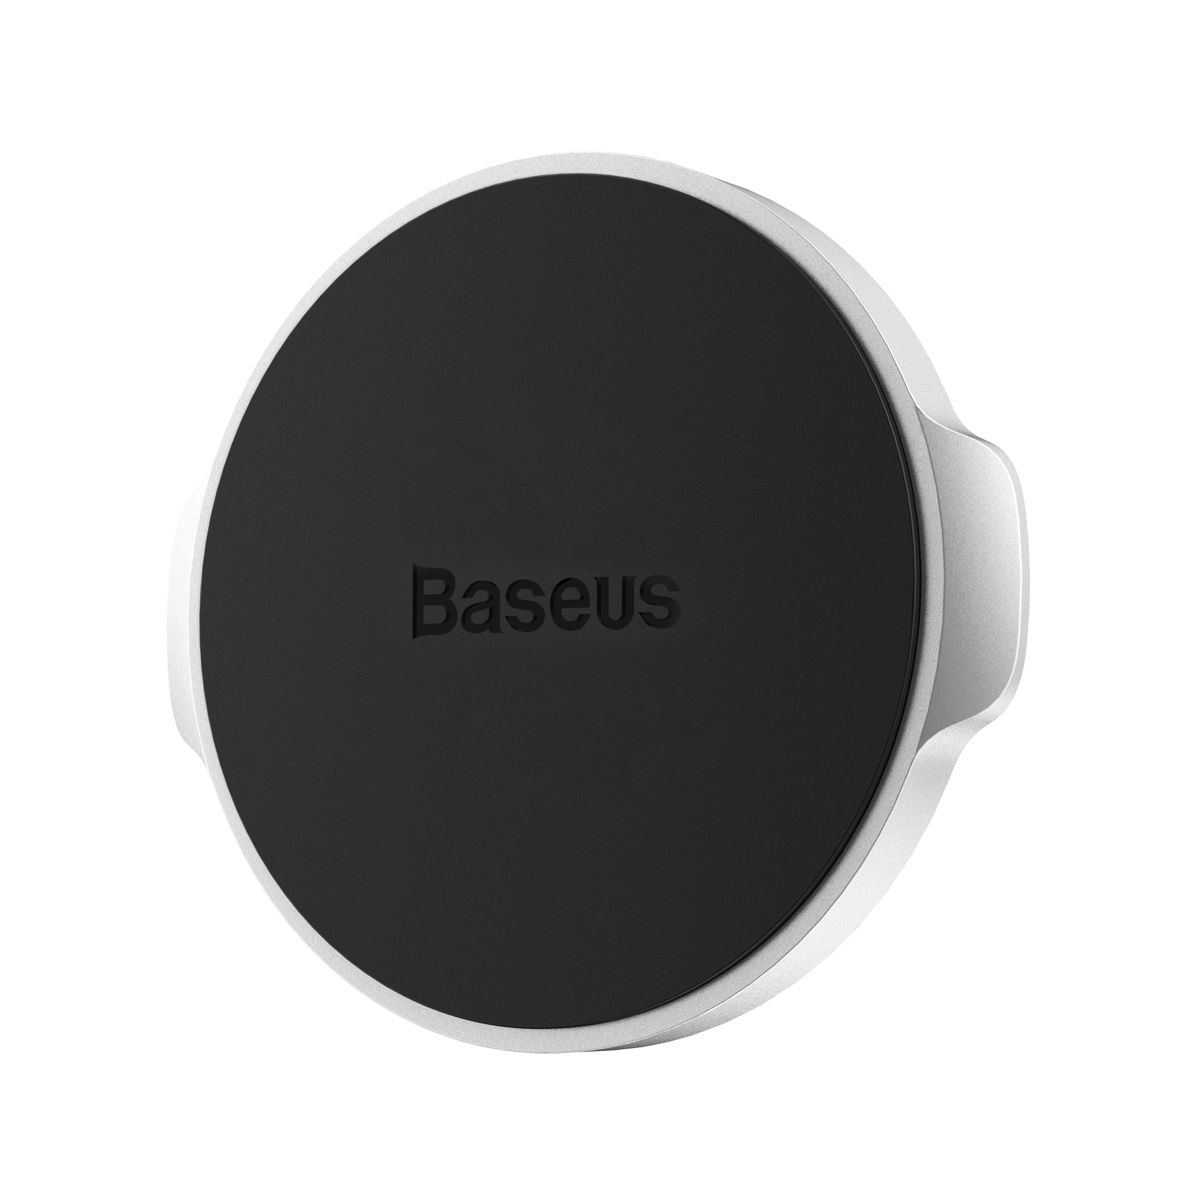  Магнитный автомобильный держатель для телефона Baseus Small Ears Series, цвет -  серебристый